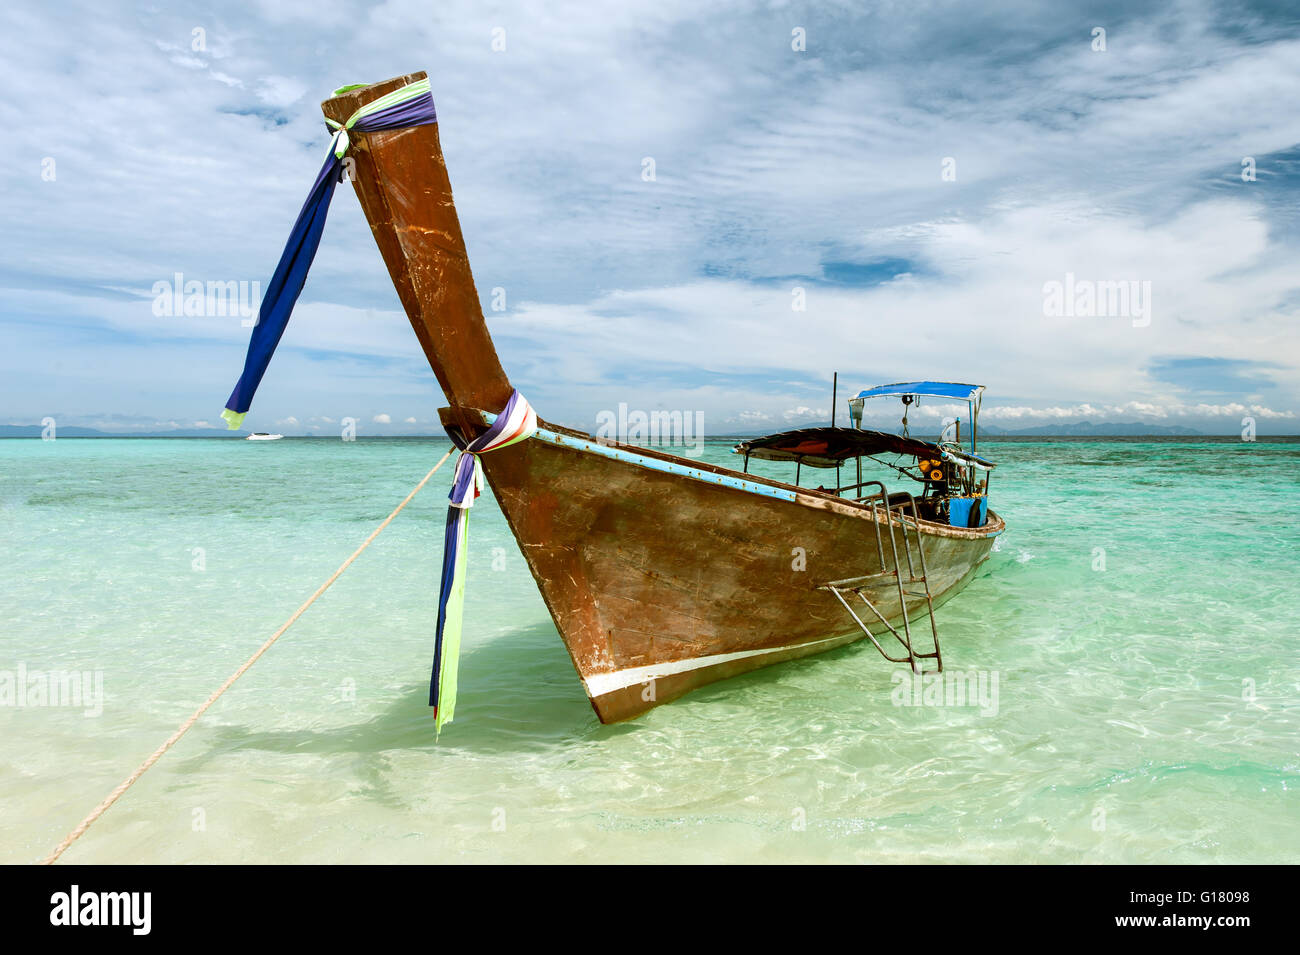 Das Longtail-Boot, bekannt als Ruea Hang Yao in der thailändischen Sprache ist eine Art von Wasserfahrzeugen in Südostasien heimisch. Stockfoto